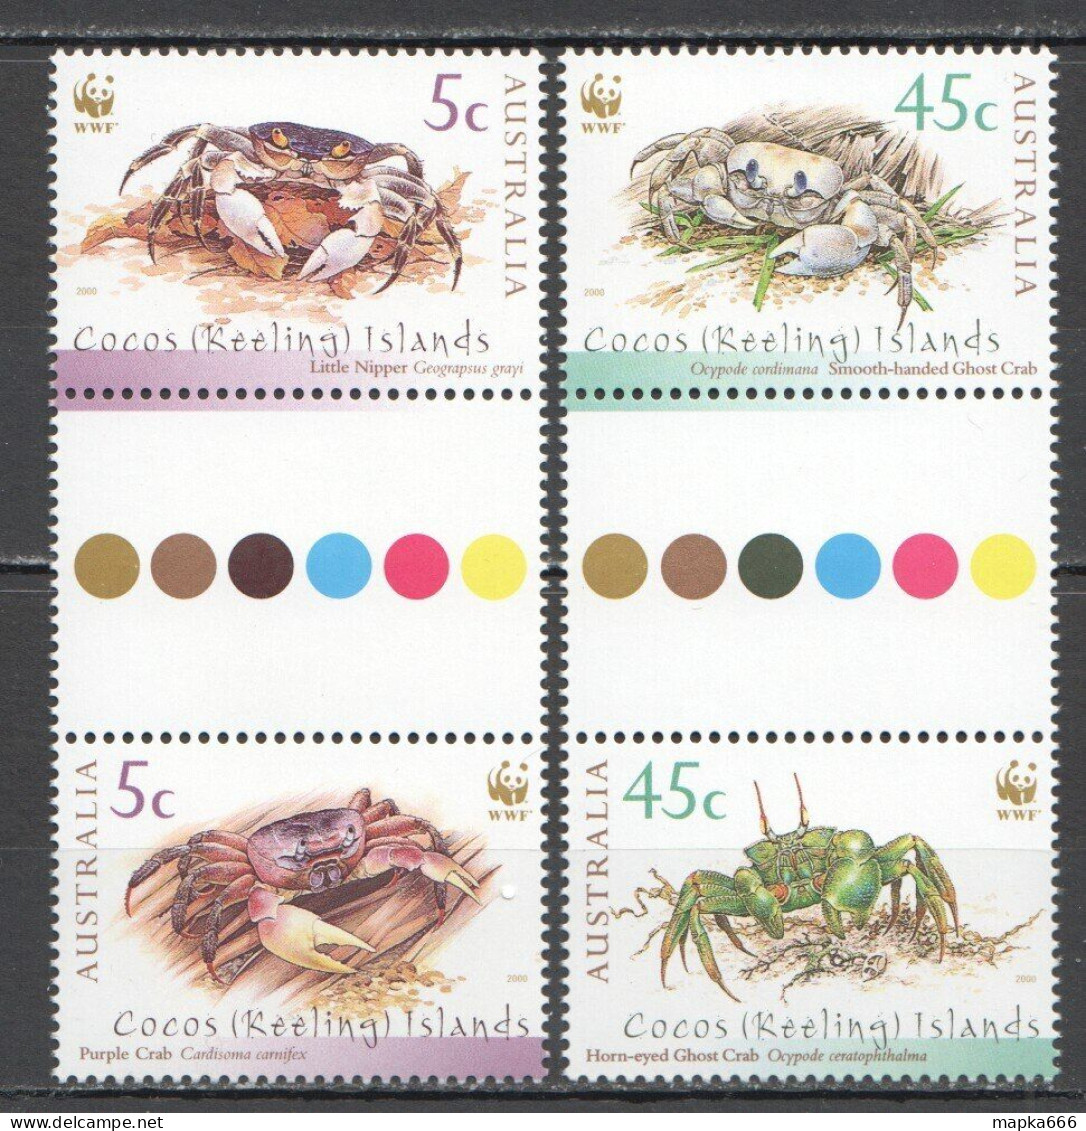 Ft198 2000 Australia Cocos Islands Crabs Wwf Marine Life Gutter #400-3 Set Mnh - Meereswelt